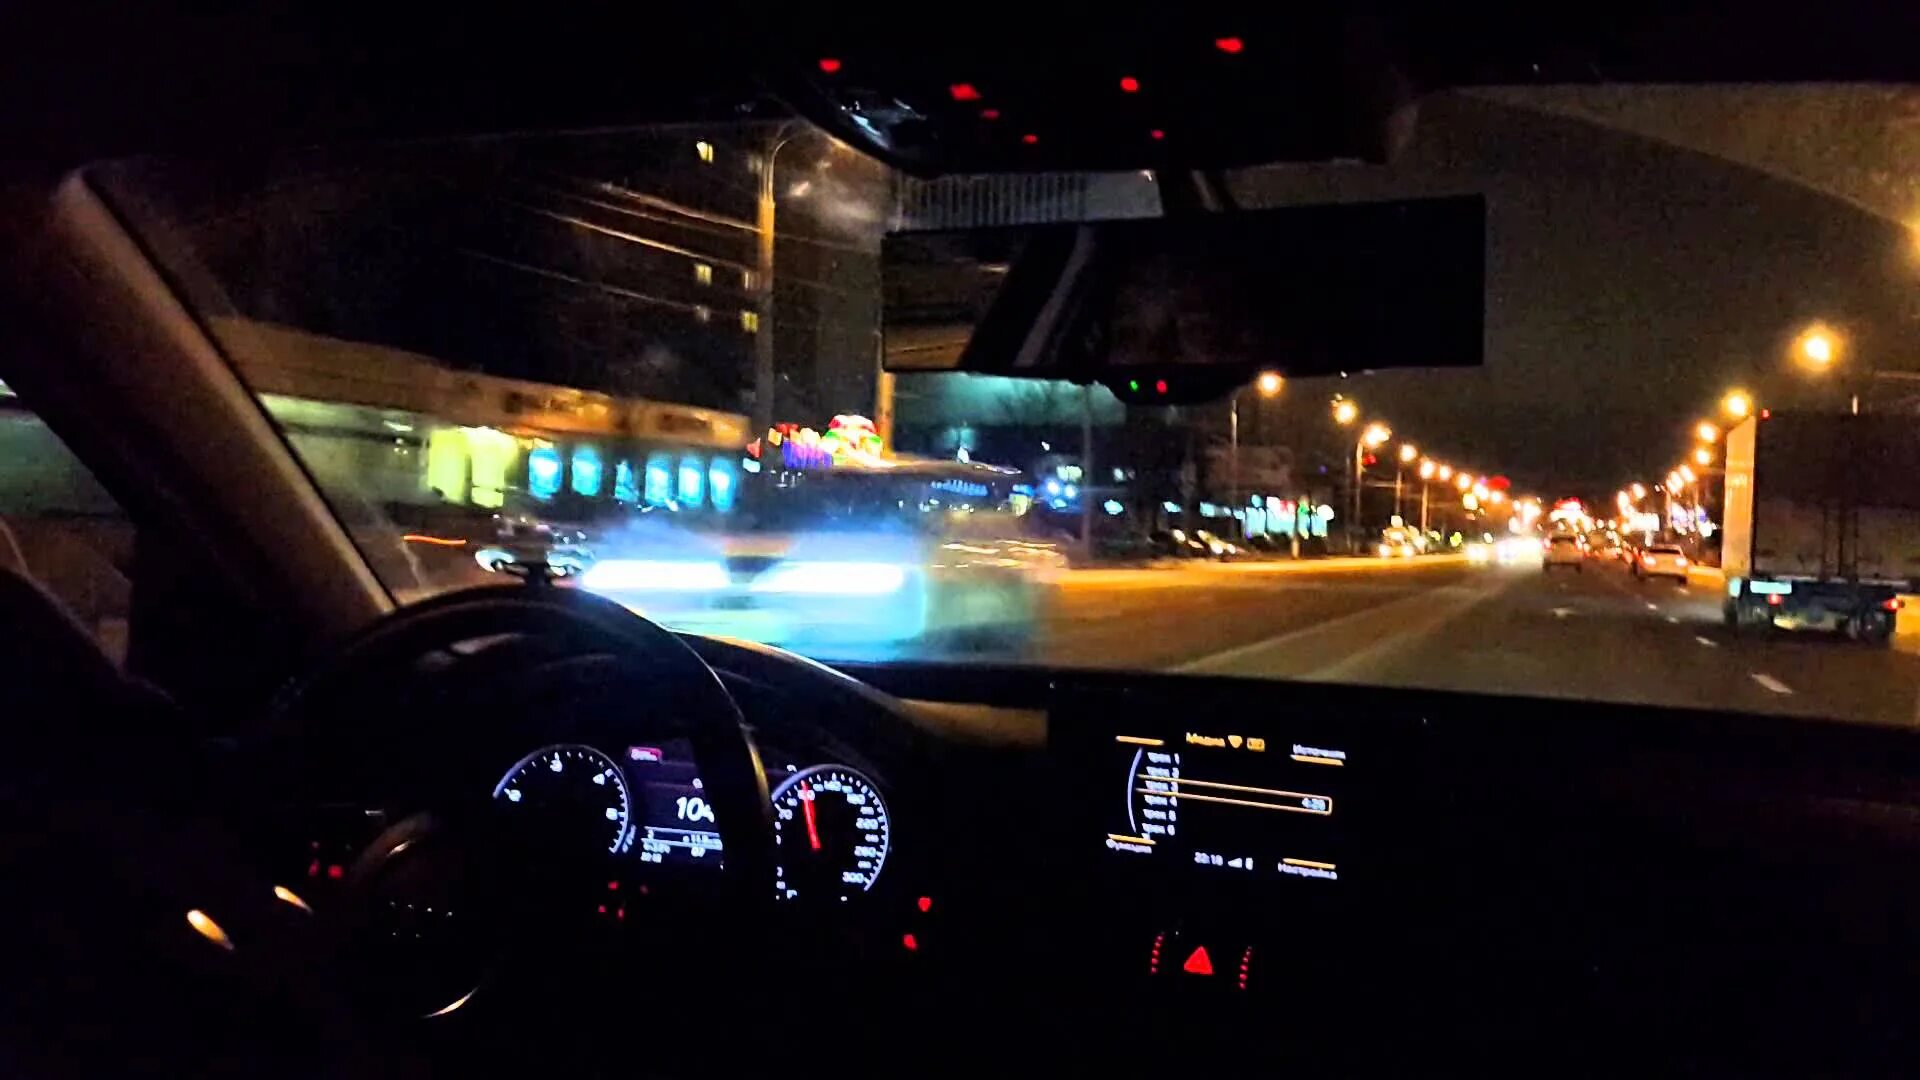 БМВ м5 покатушки. Машина внутри ночью. Вид из машины на ночной город. Вид из салона автомобиля.